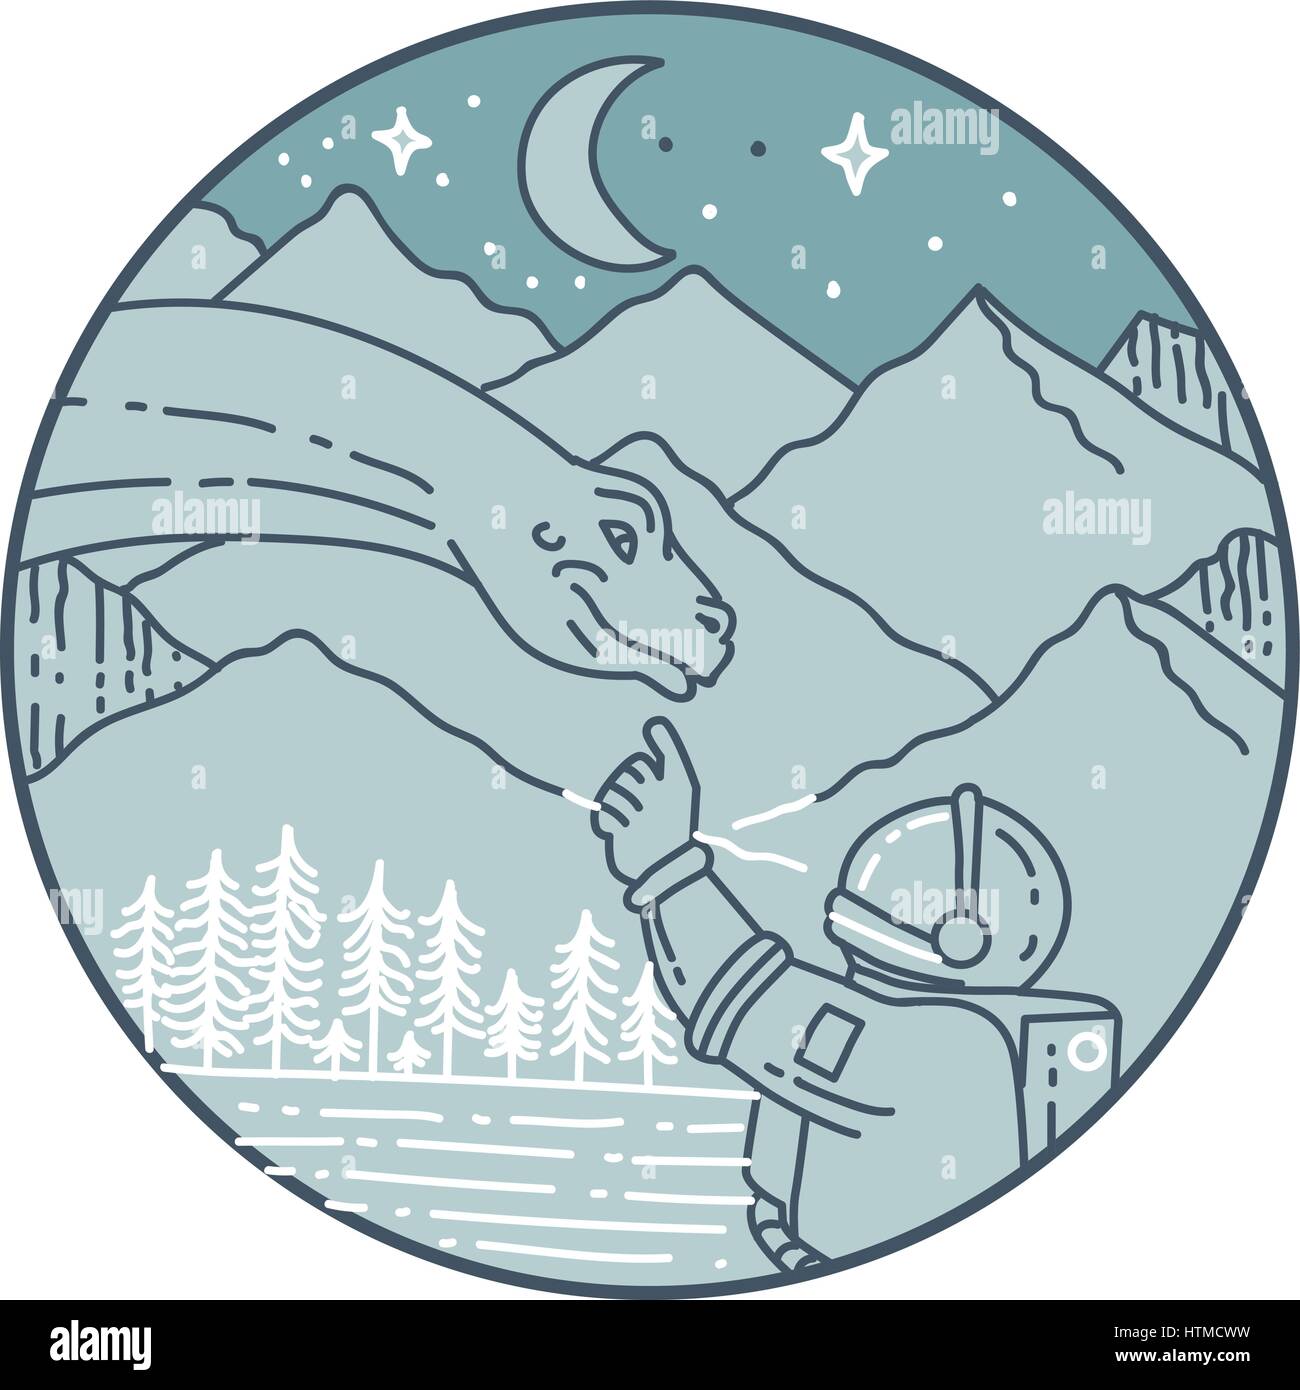 Mono stile linea illustrazione di un astronauta toccando brontosaurus dinosauro set testa all'interno del cerchio con la montagna, la luna, le stelle e gli alberi del backgro Illustrazione Vettoriale